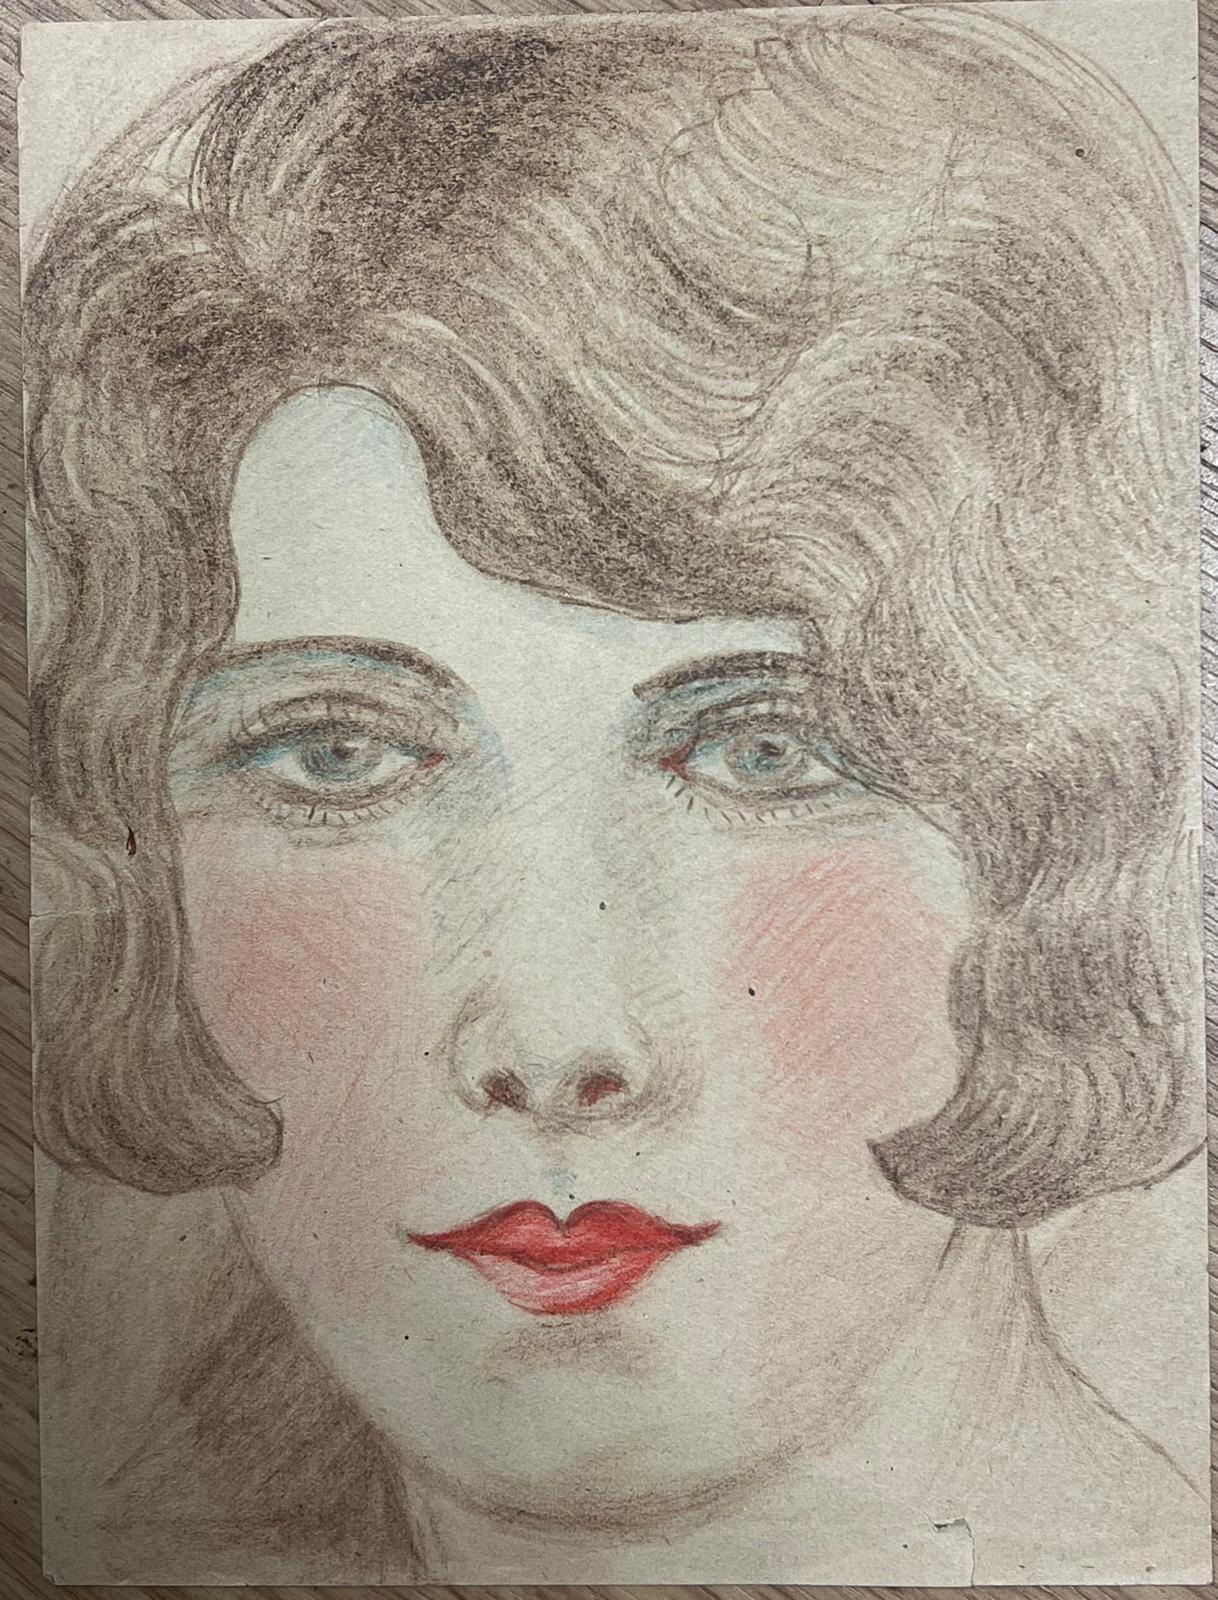 Rotes Lippenblaues Porträt einer eleganten jungen Gesellschafts Dame mit blauen Augen, exquisite Zeichnung  – Painting von Marjorie Schiele (1913-2008)